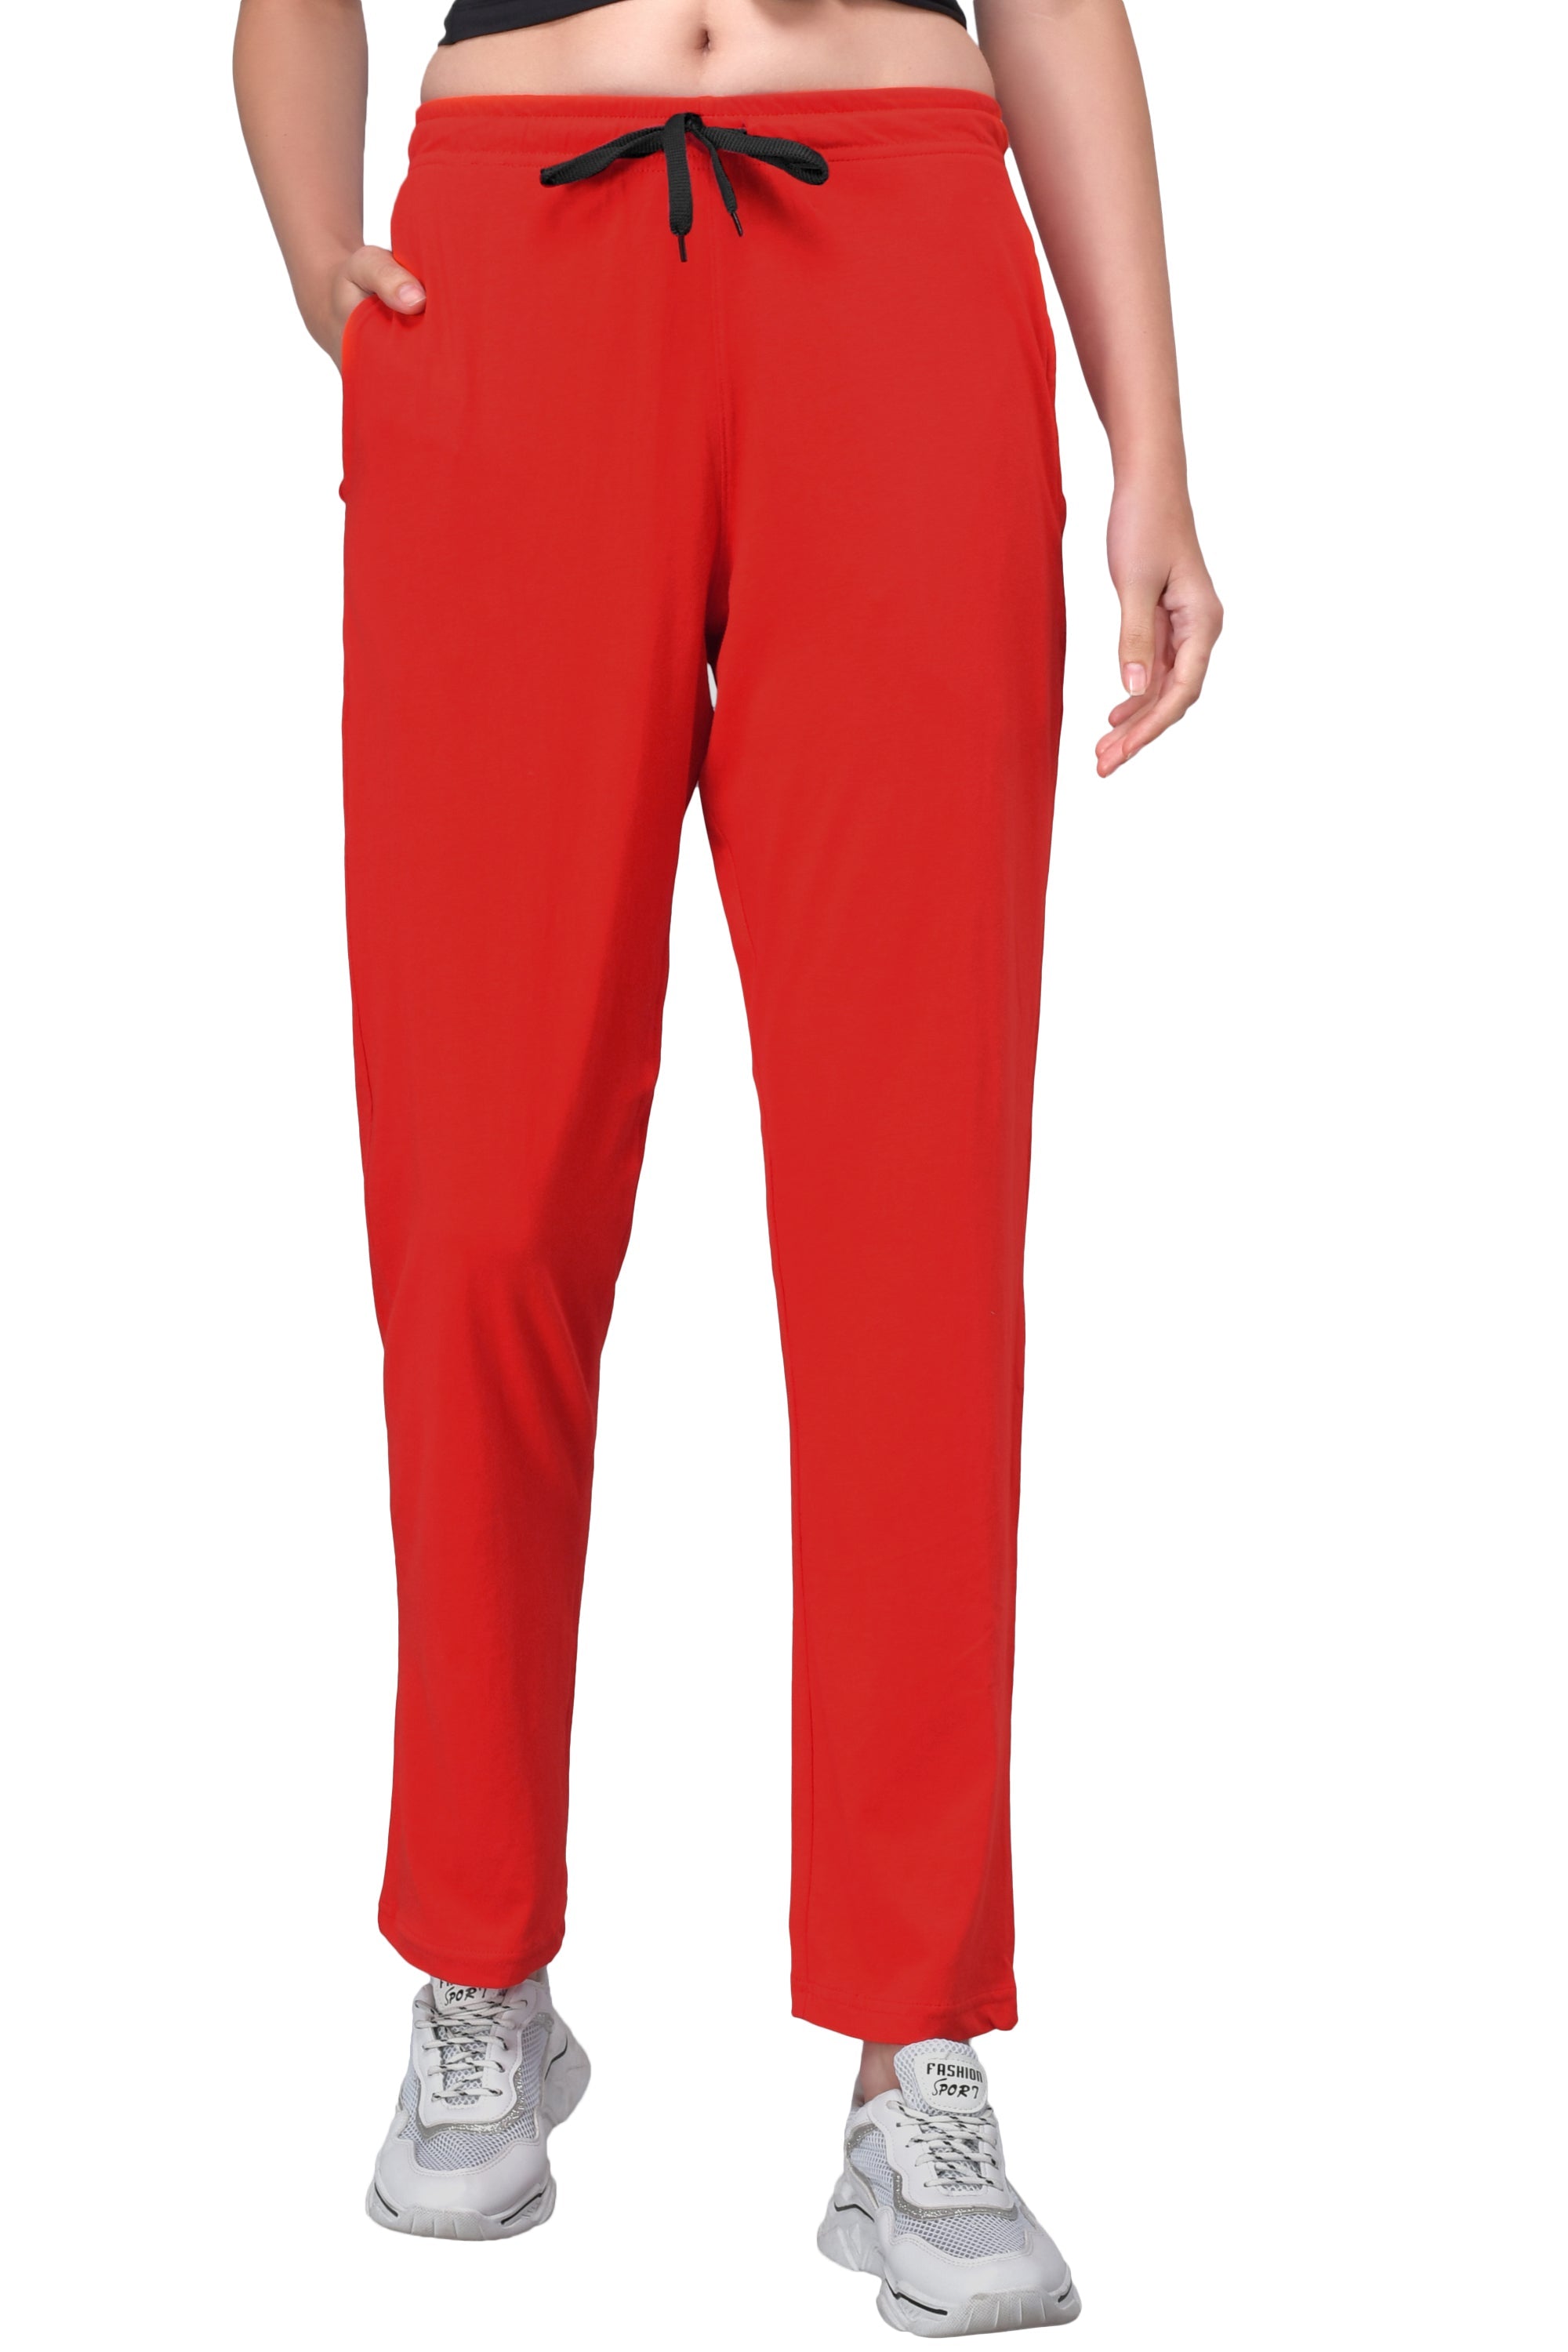 Pack Of 2 Designer Track Pant For Women/ Multi Colour Lower For Women(Black  & Red)